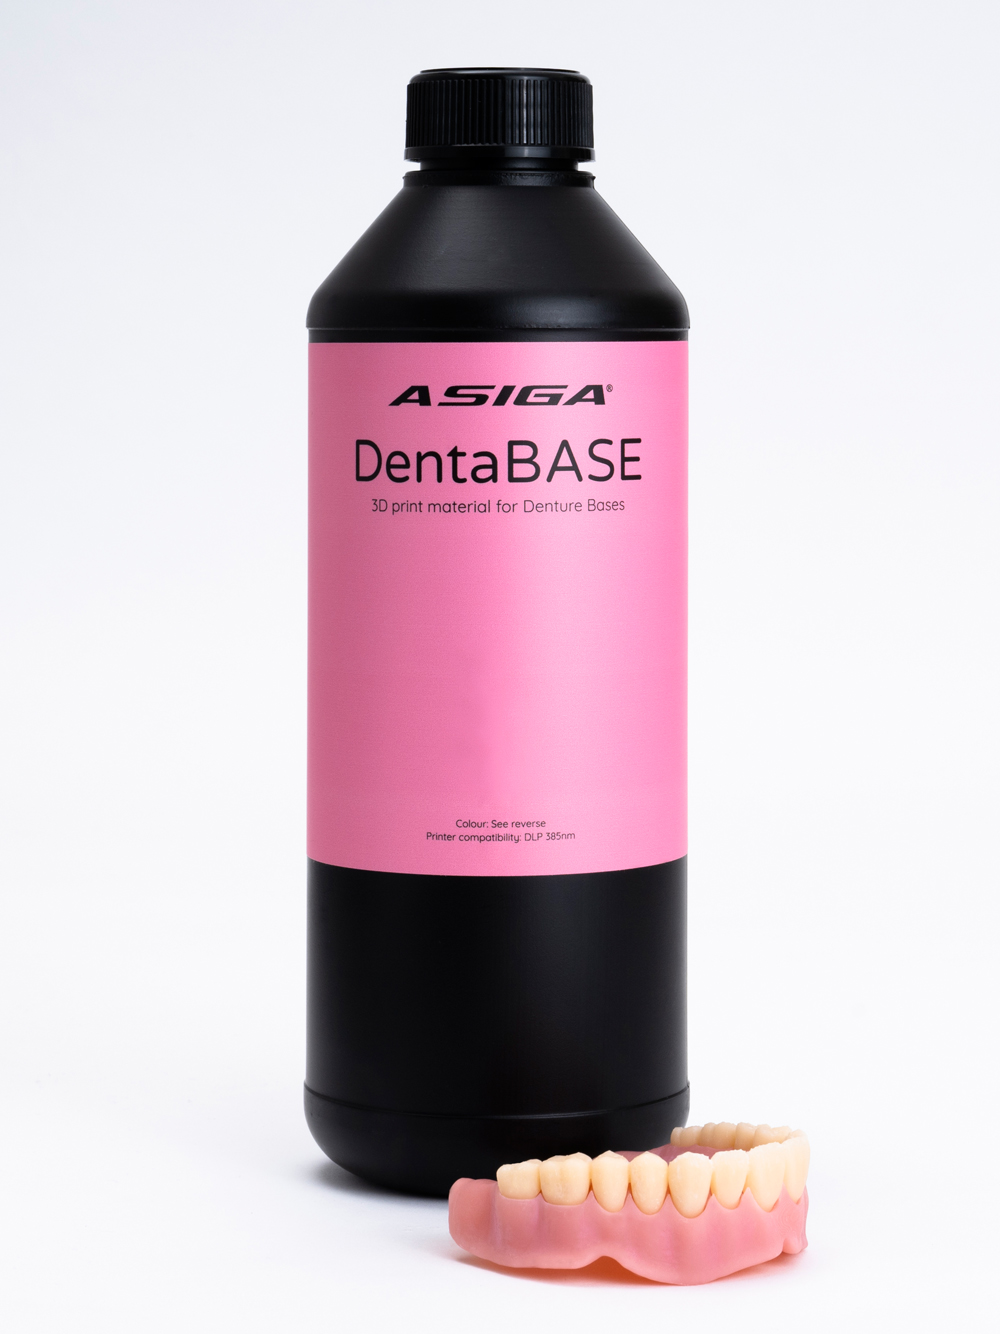 Asiga-DentaBASE-web